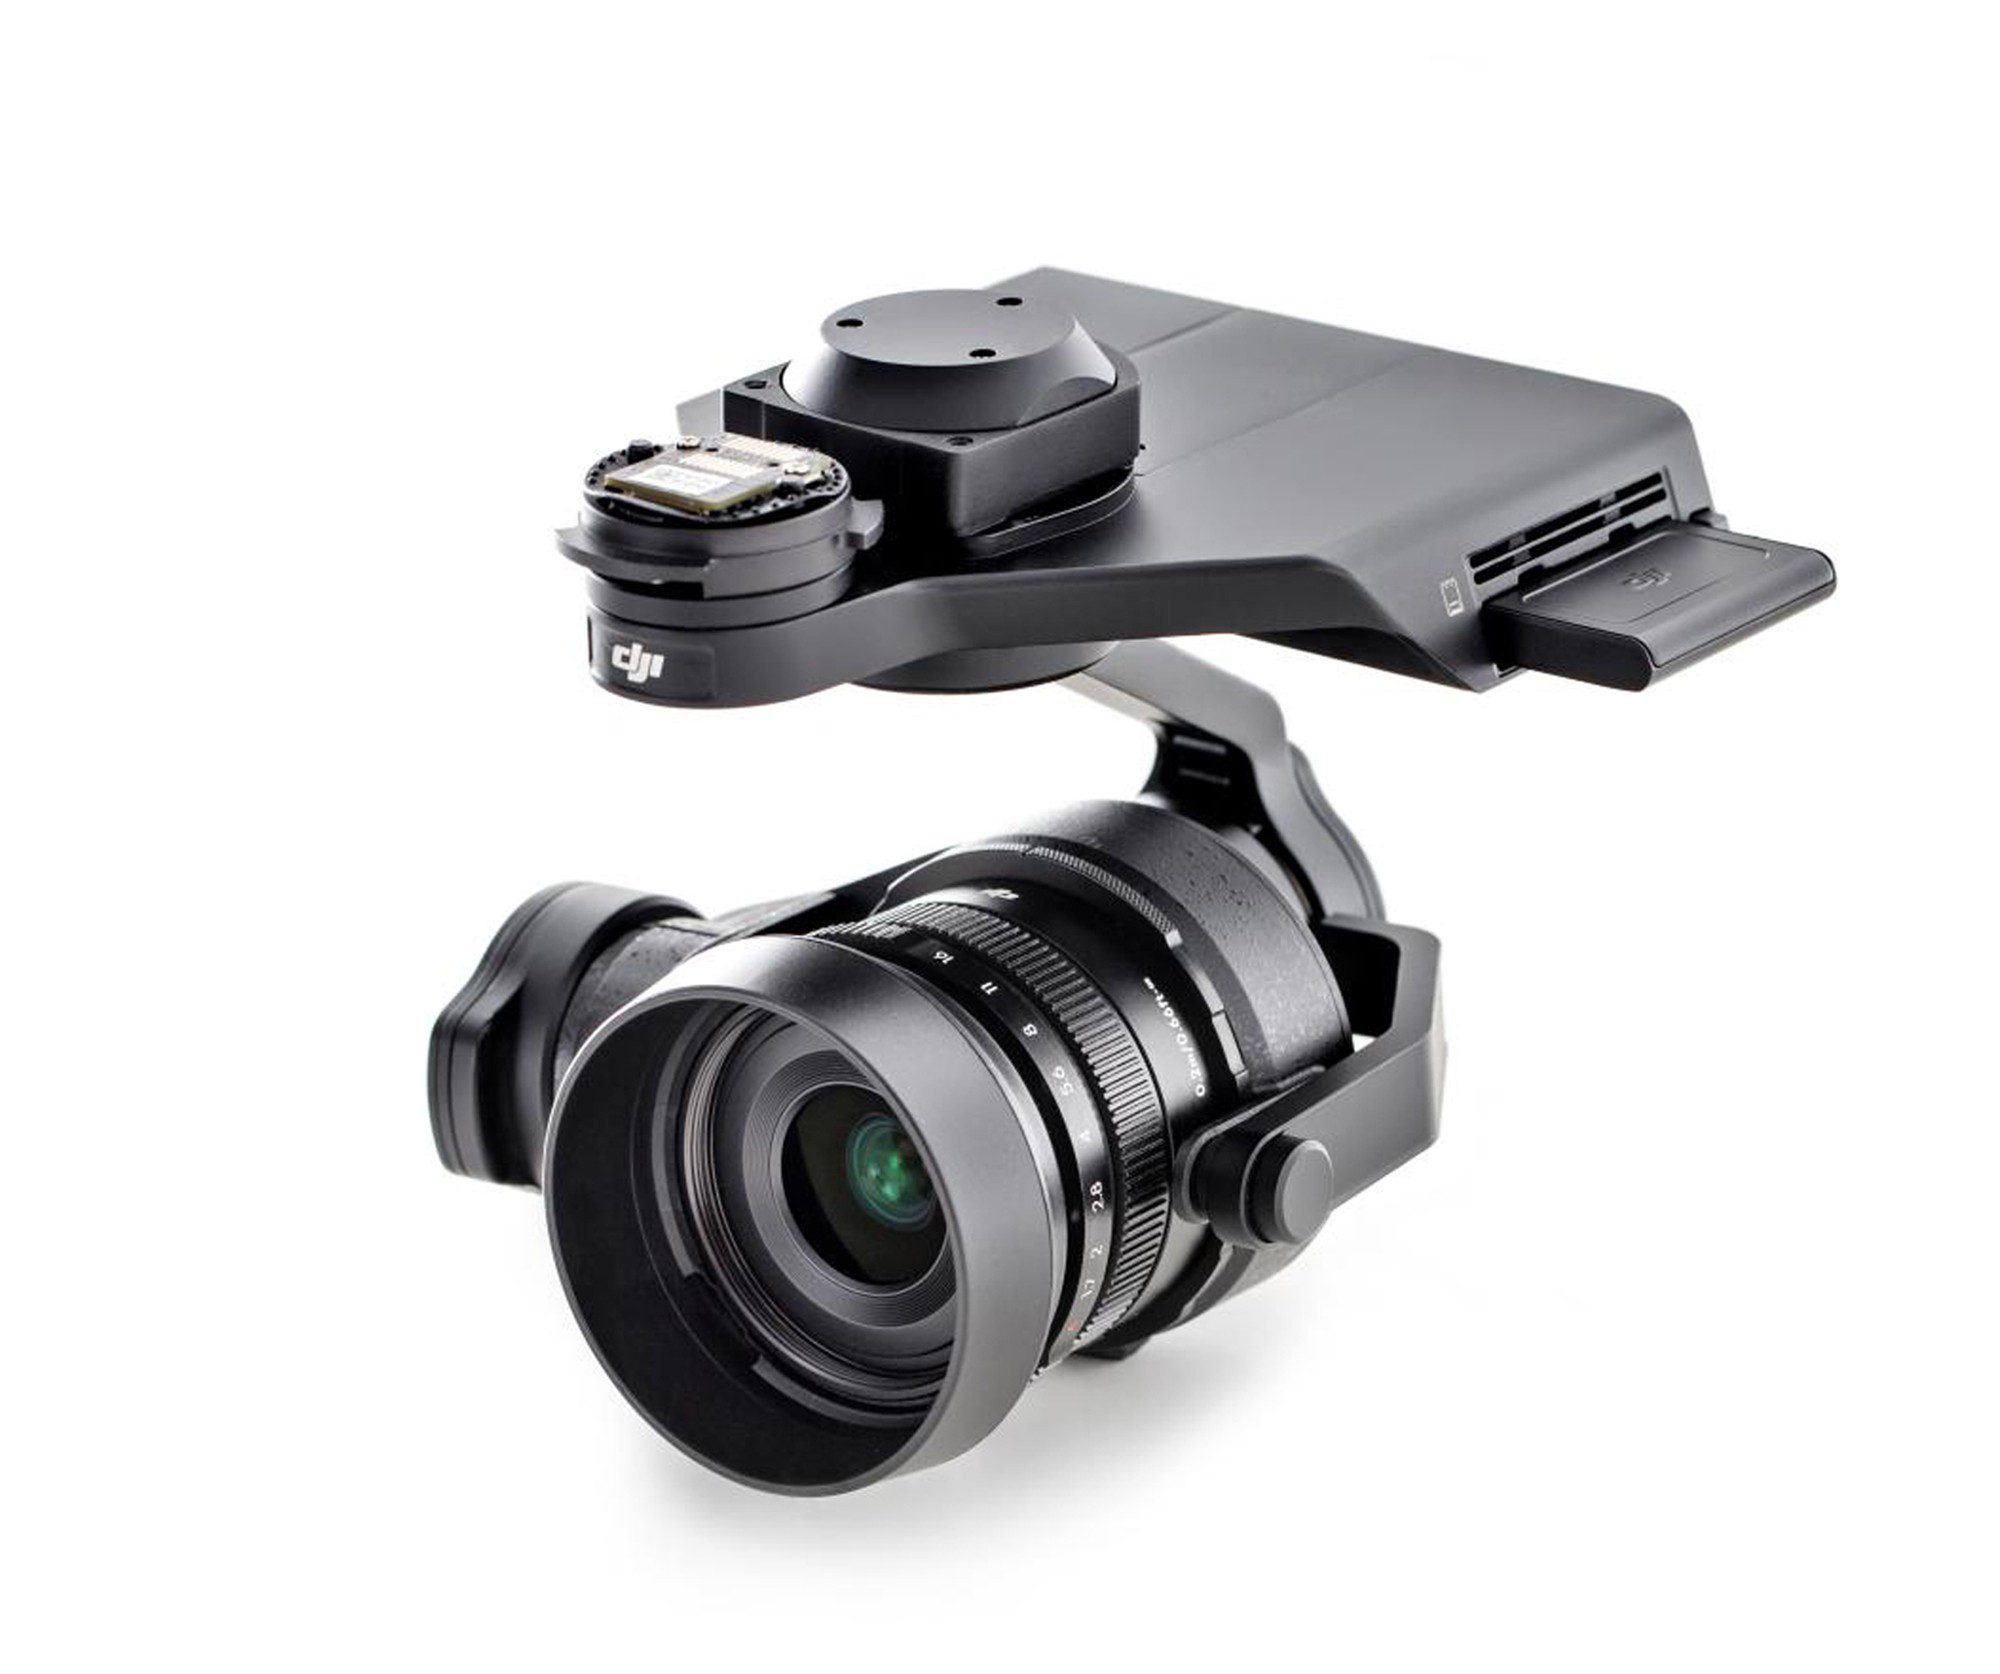 DJI Zenmuse X5R (With DJI MFT Lens)